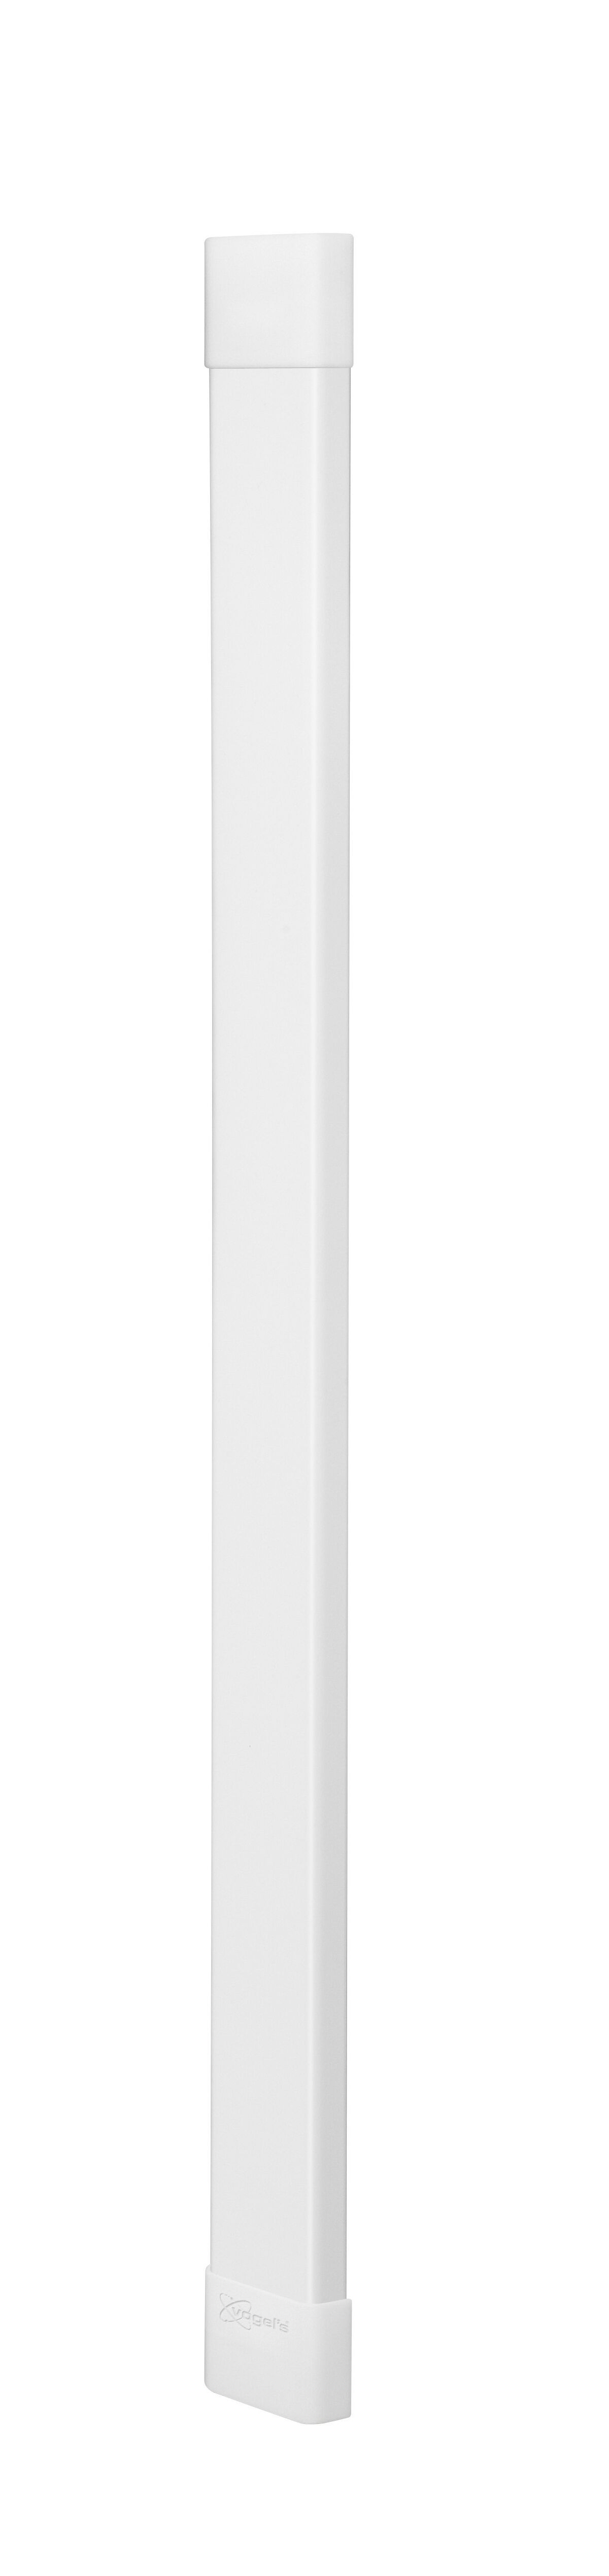 Vogel's CABLE 8 Chemin de câbles (blanc) - Max. nombre de câbles à tenir : Jusqu’à 8 câbles - Longueur : 94 cm - Product